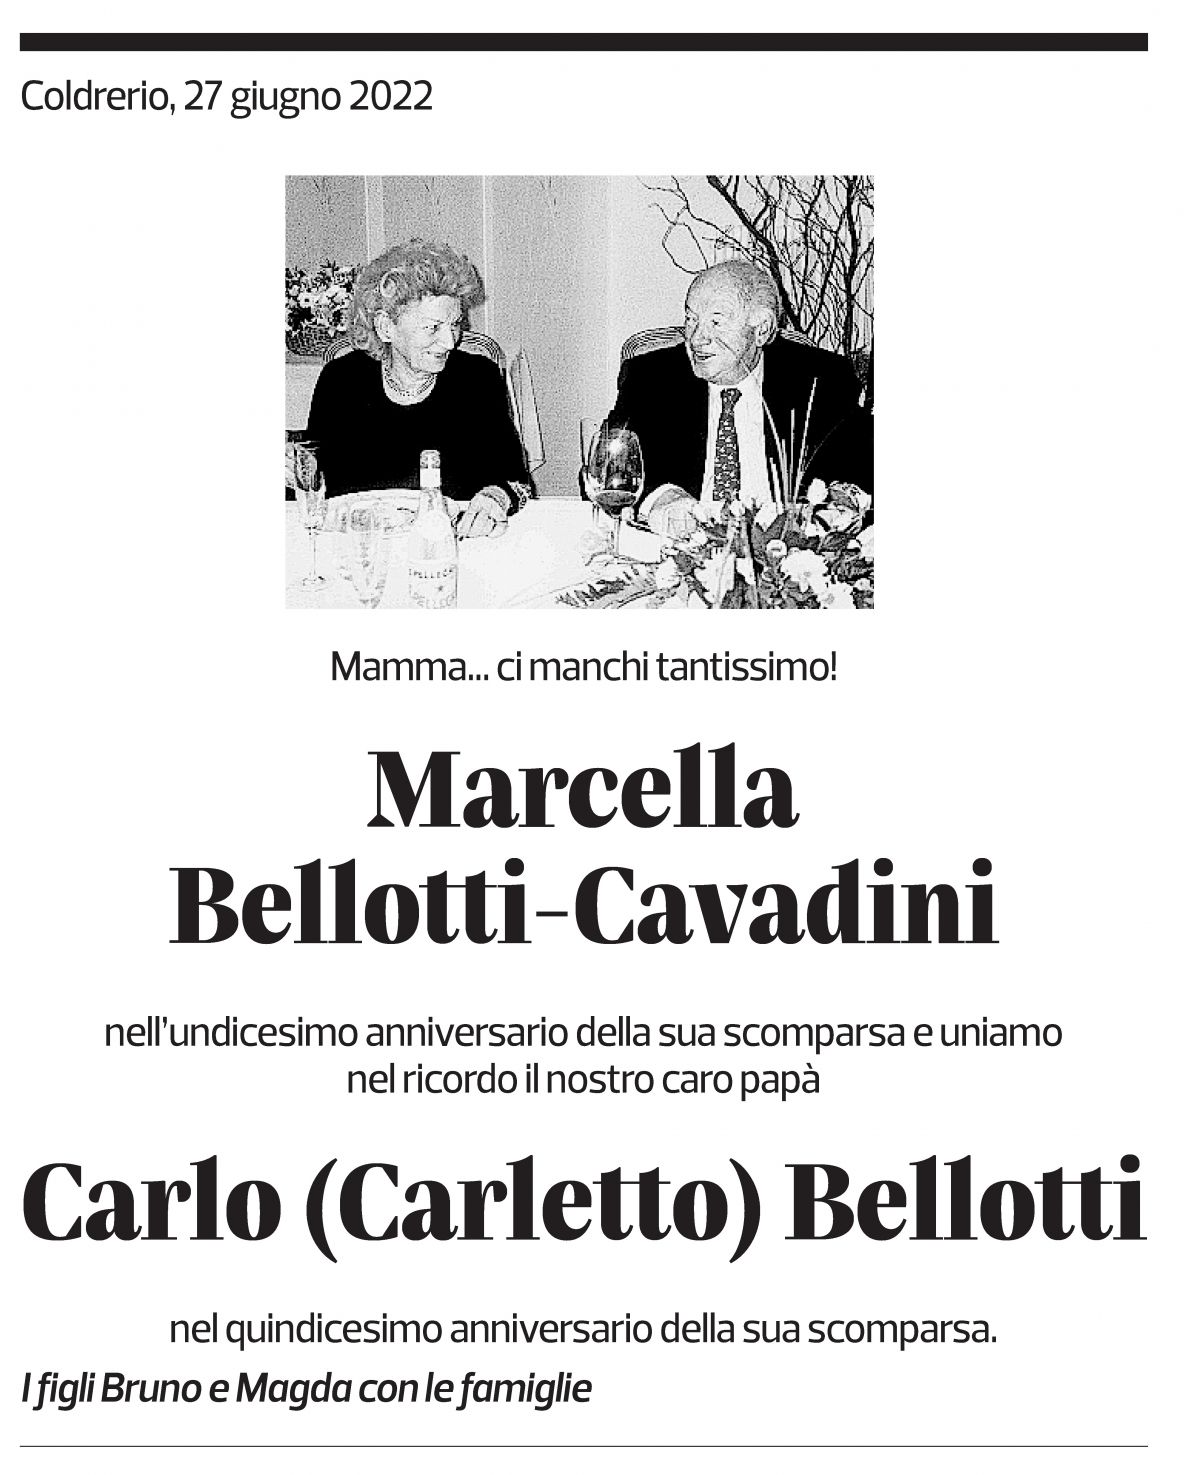 Annuncio funebre Marcella  E Carlo (carletto) Bellotti - Cavadini